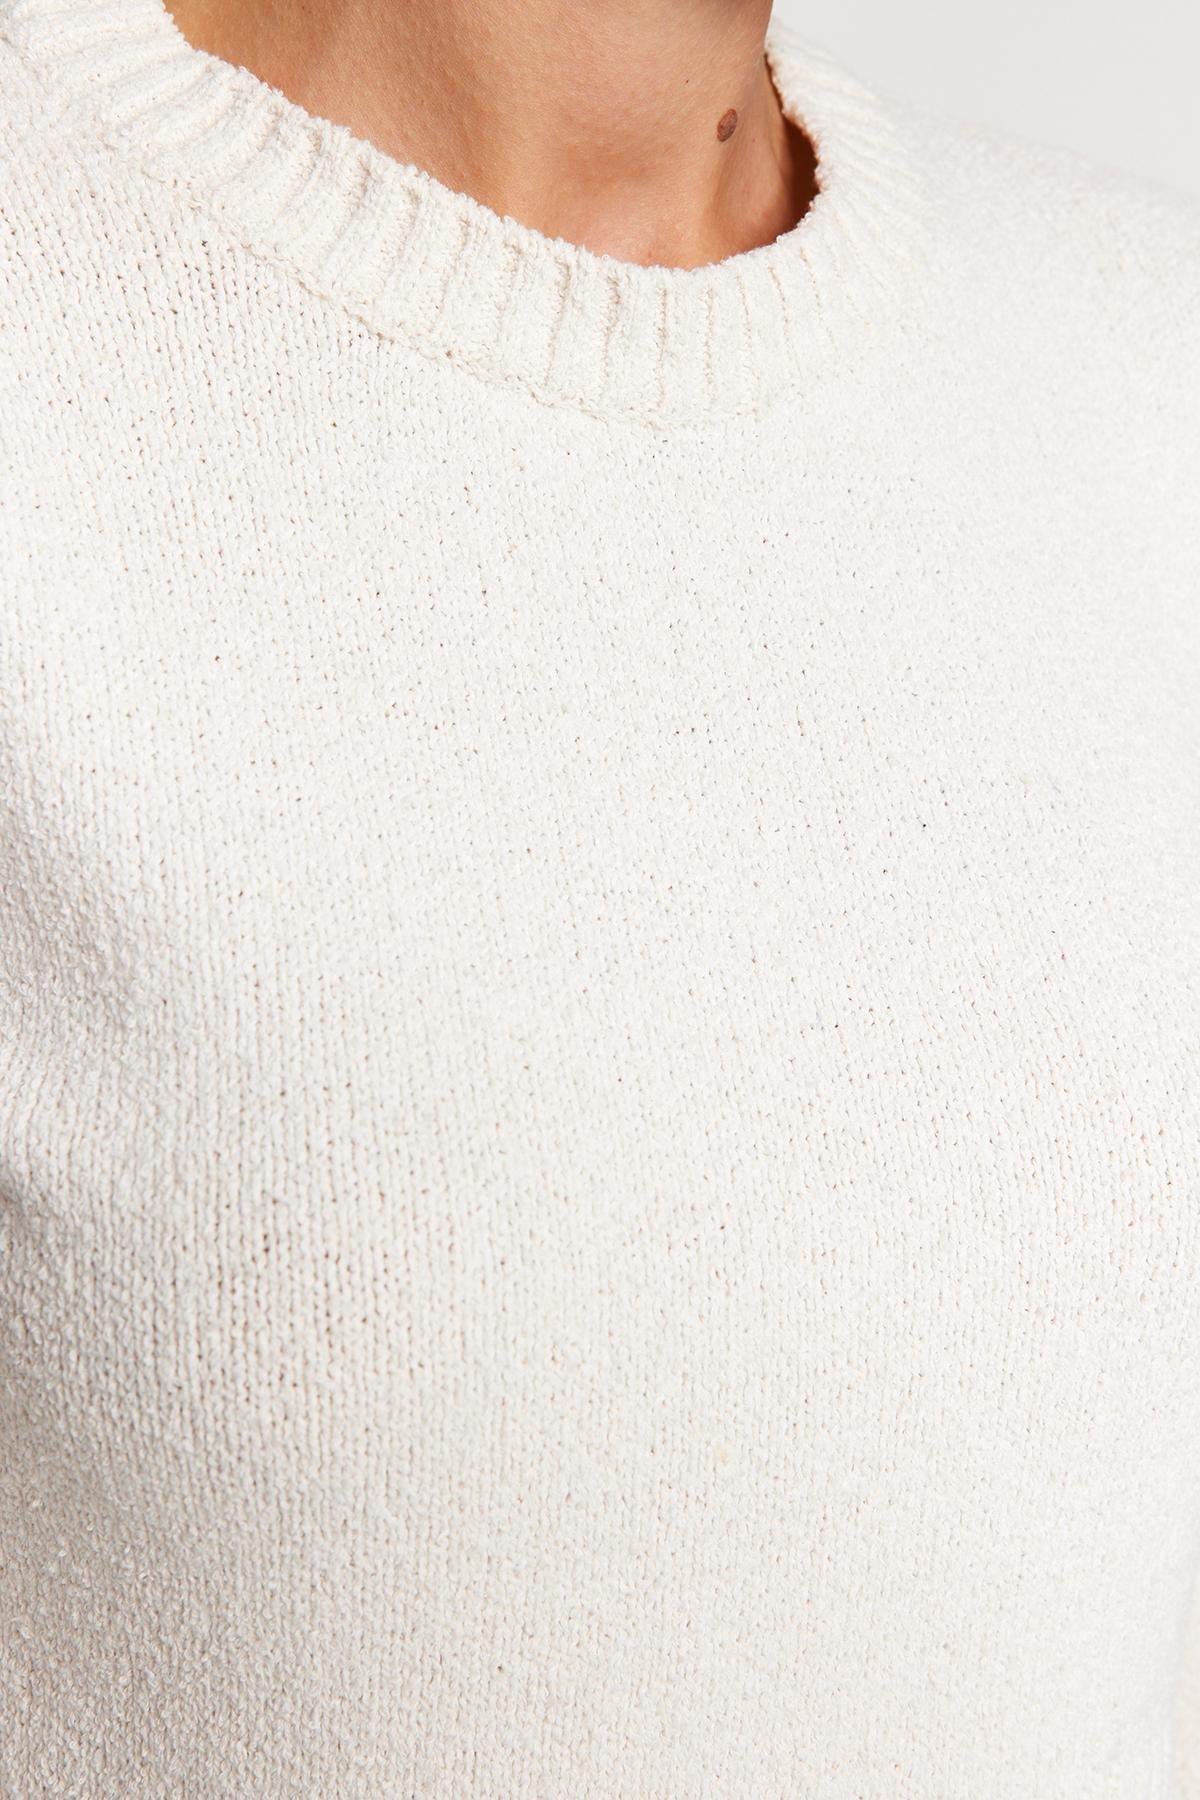 Trendyol - White Knitwear Sweater